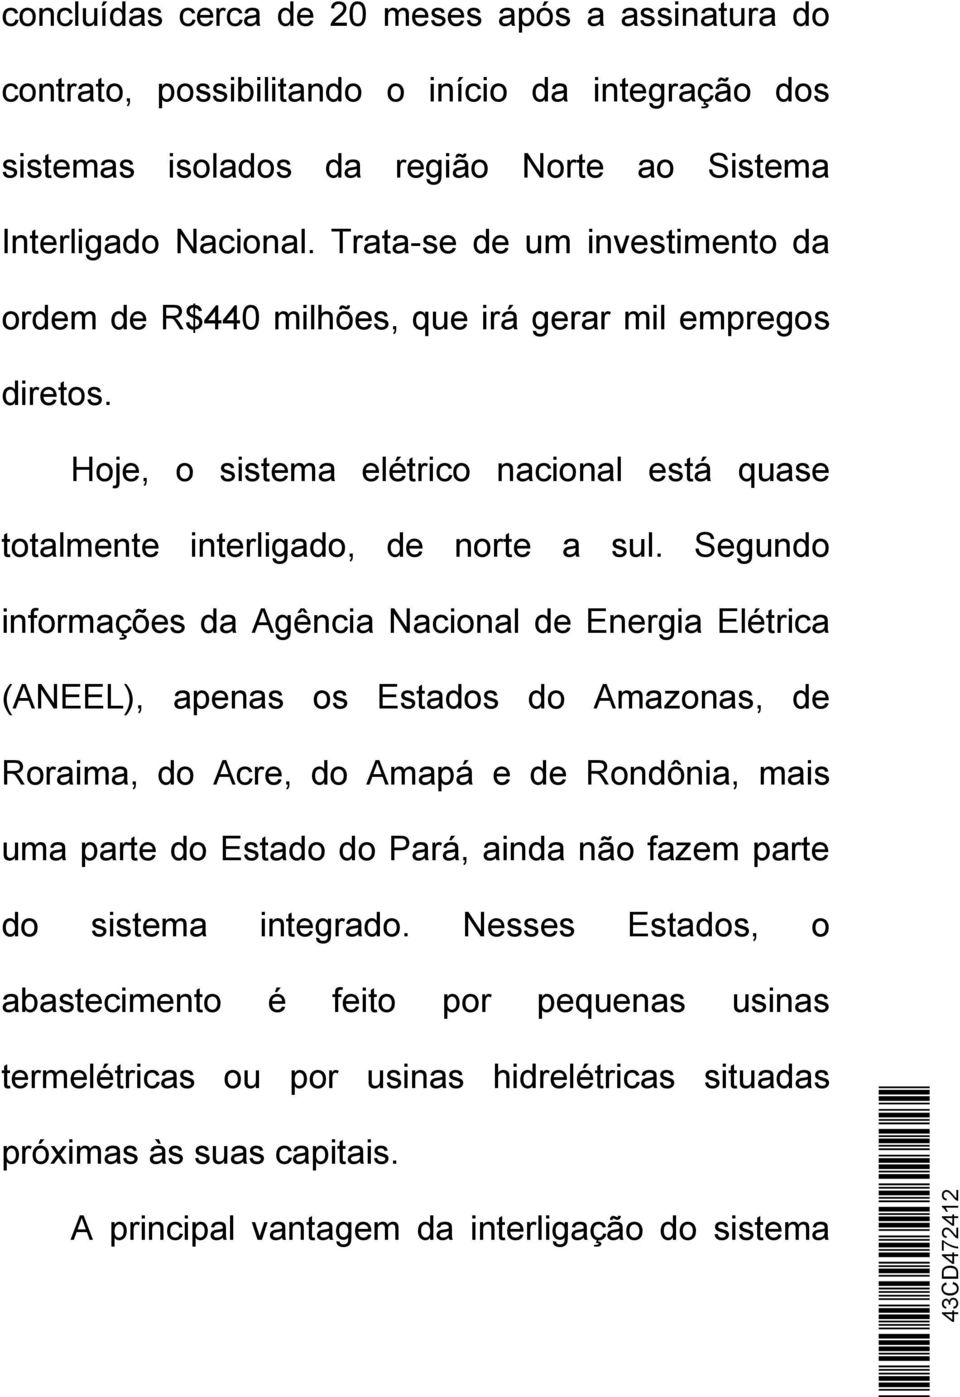 Segundo informações da Agência Nacional de Energia Elétrica (ANEEL), apenas os Estados do Amazonas, de Roraima, do Acre, do Amapá e de Rondônia, mais uma parte do Estado do Pará, ainda não